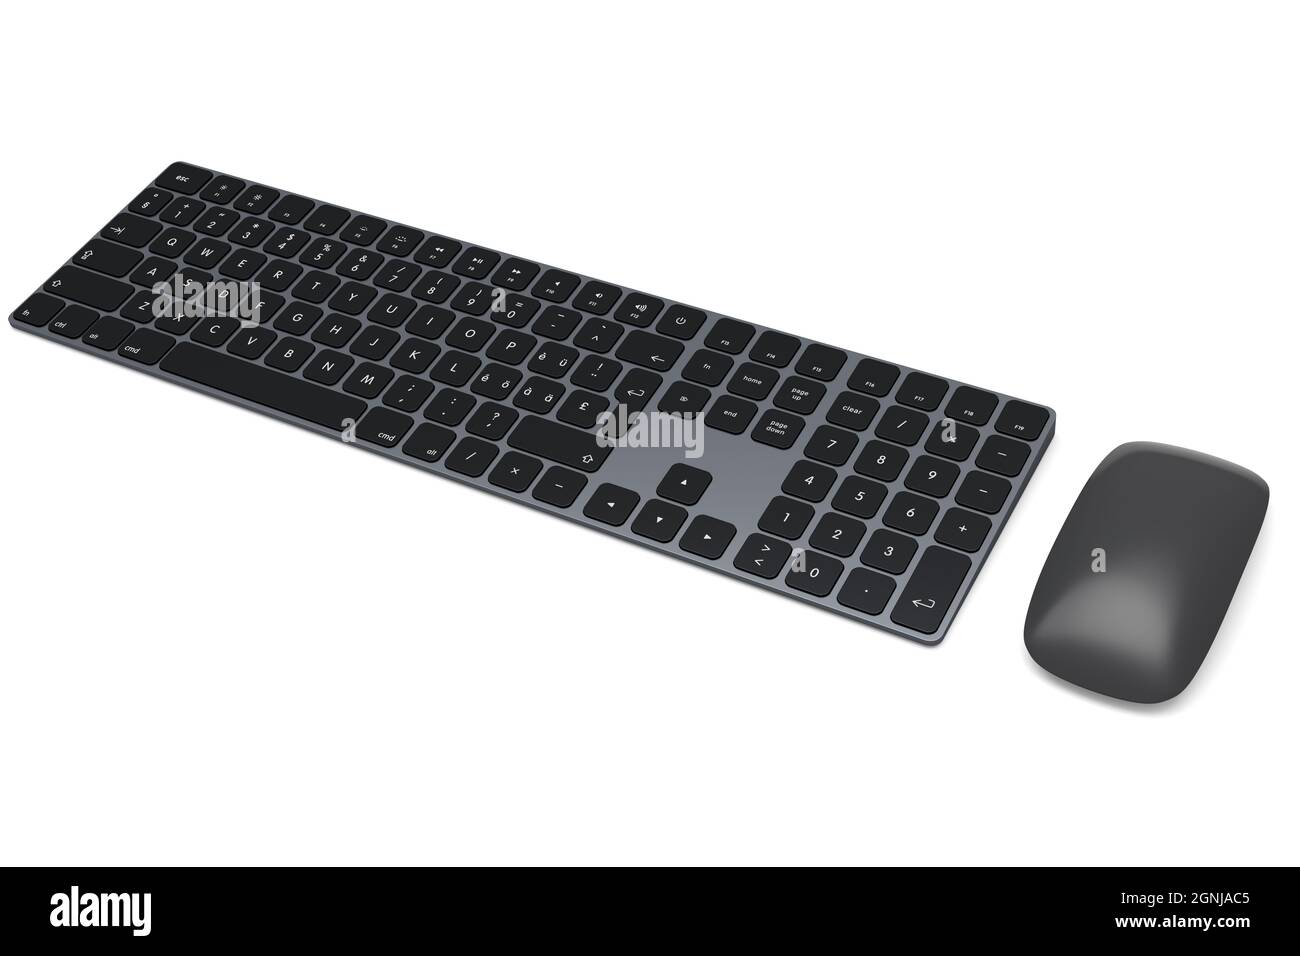 Moderno teclado de ordenador y ratón de aluminio negro aislados sobre fondo blanco. Foto de stock